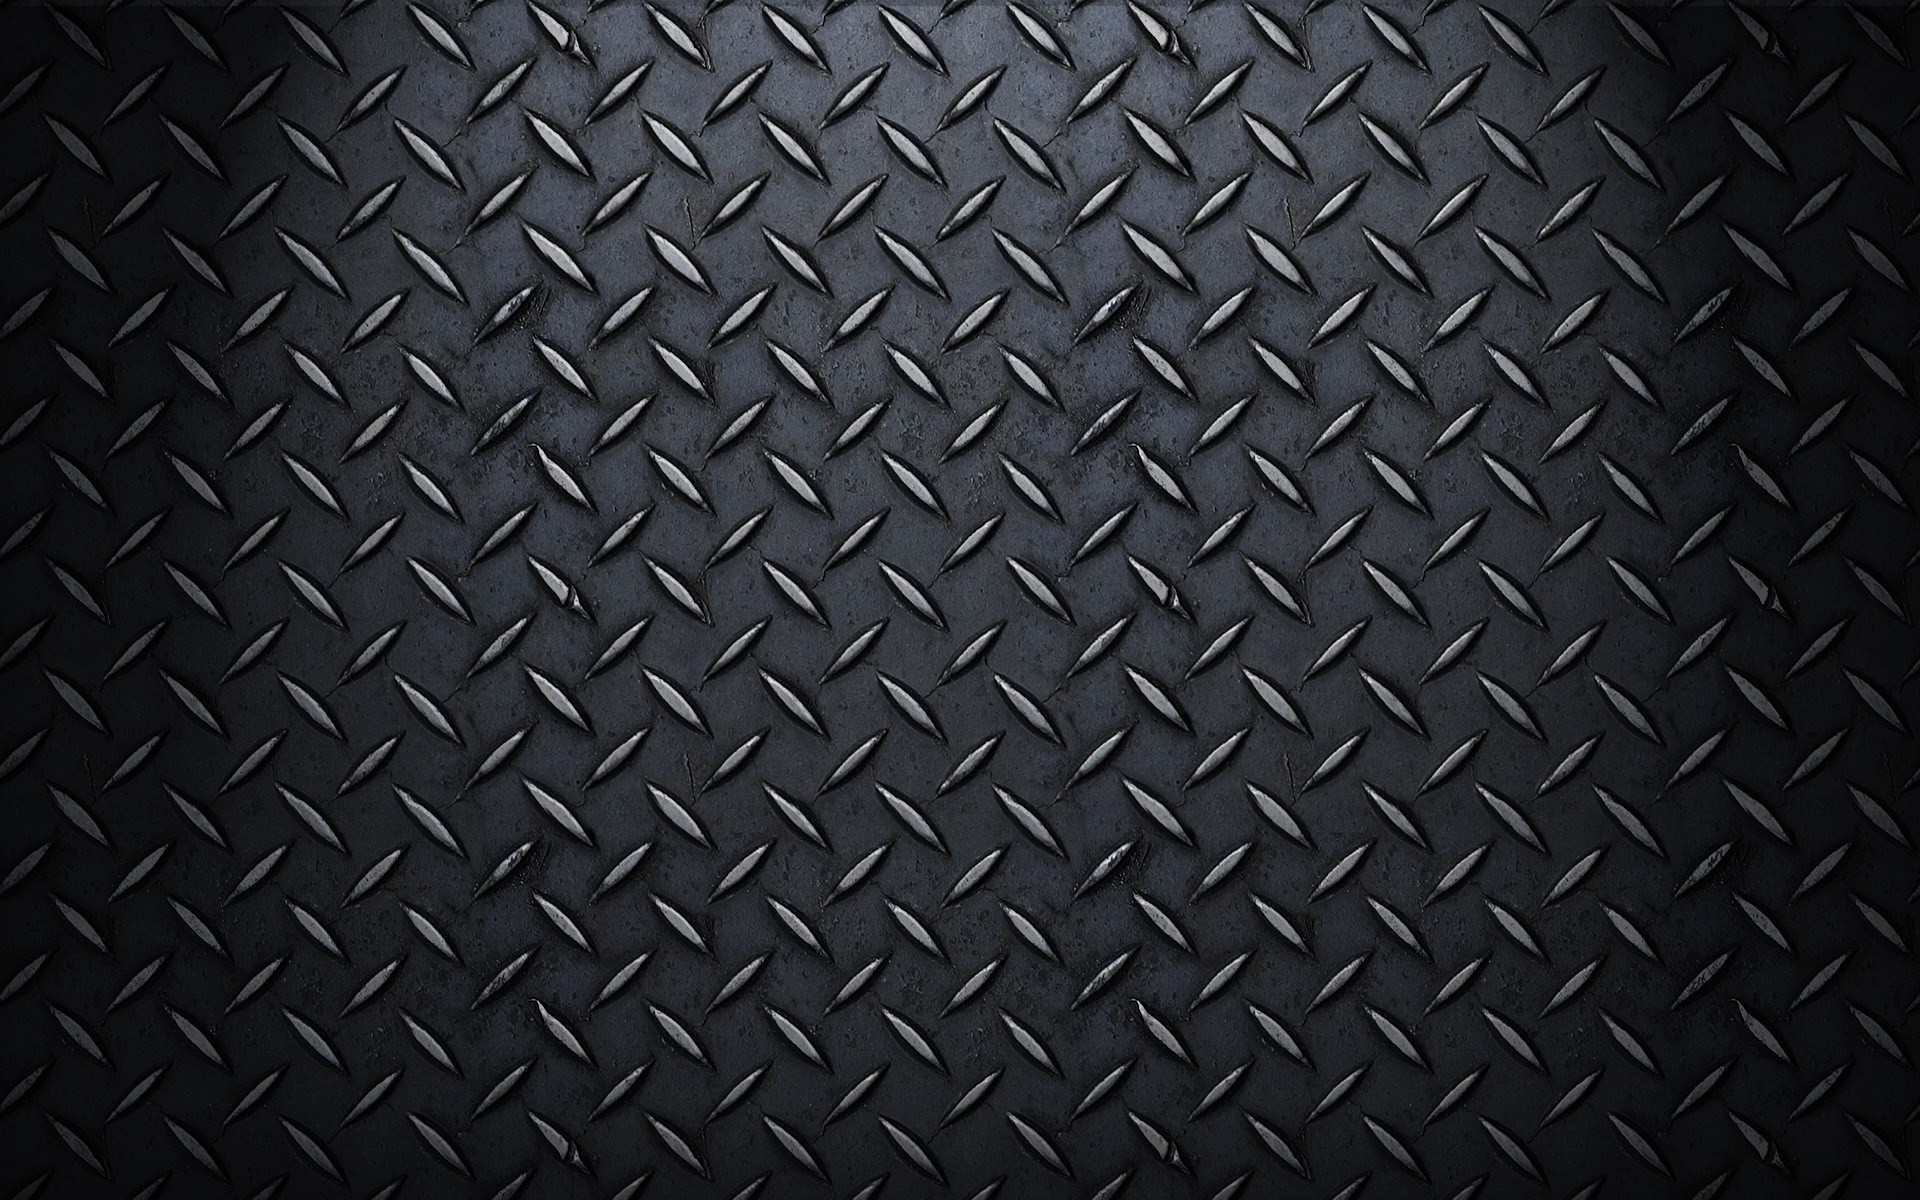 1920x1200 carbon fiber wallpaper for desktop background, 1920 x 1200 (561 kB)